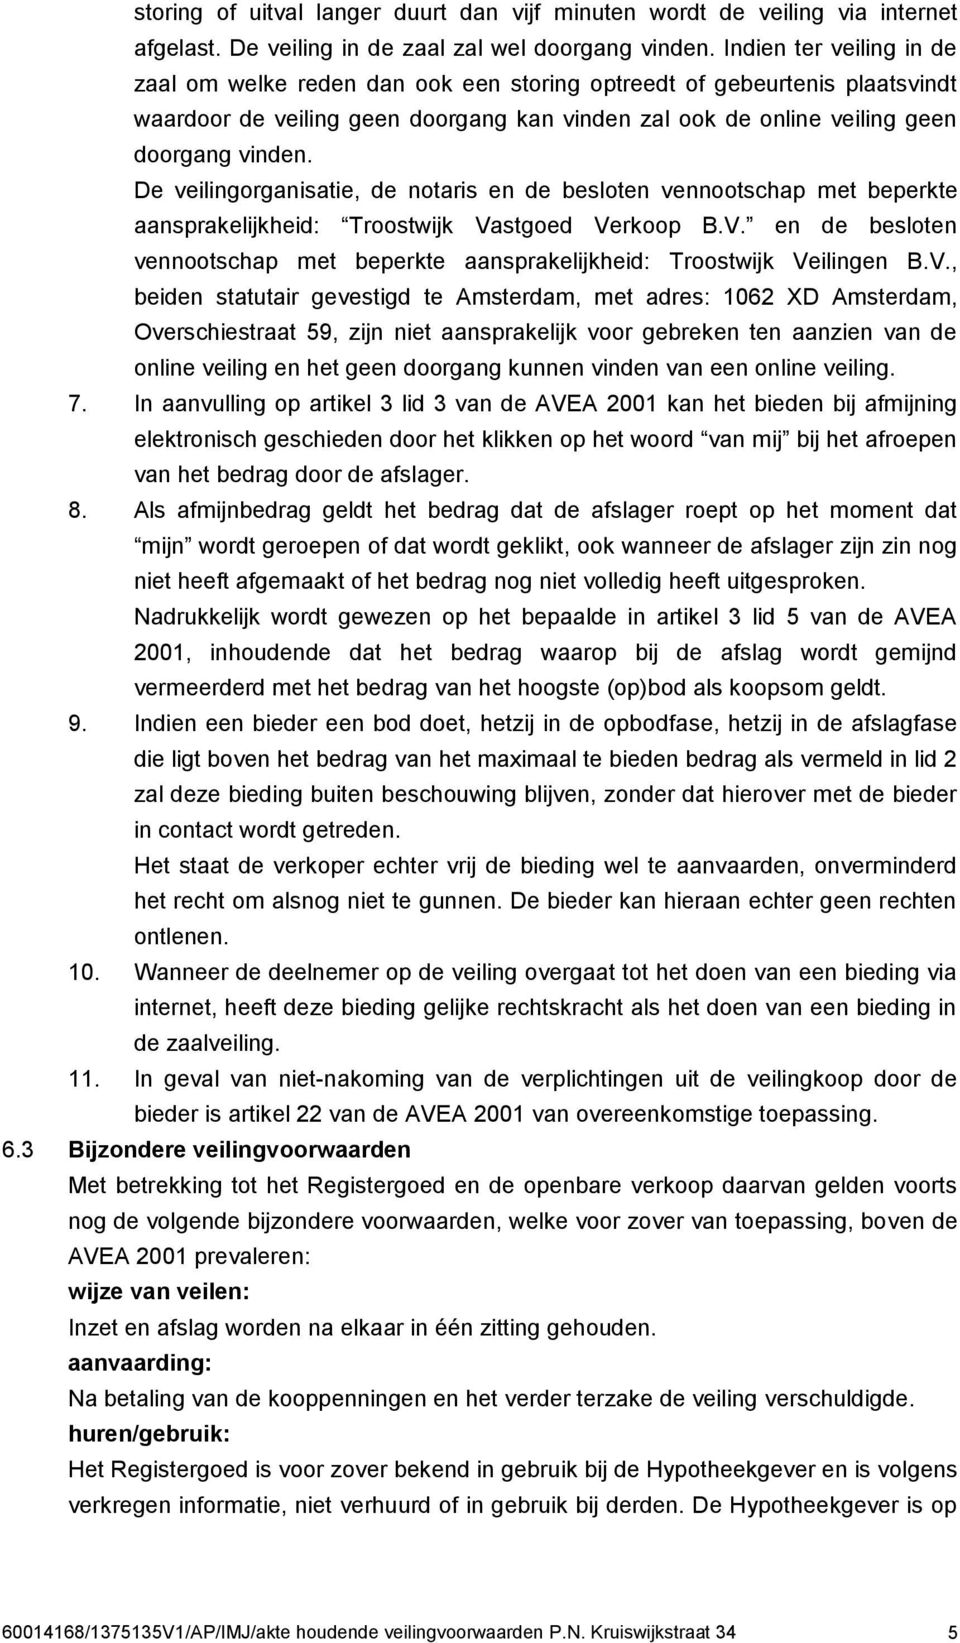 De veilingorganisatie, de notaris en de besloten vennootschap met beperkte aansprakelijkheid: Troostwijk Vastgoed Verkoop B.V. en de besloten vennootschap met beperkte aansprakelijkheid: Troostwijk Veilingen B.